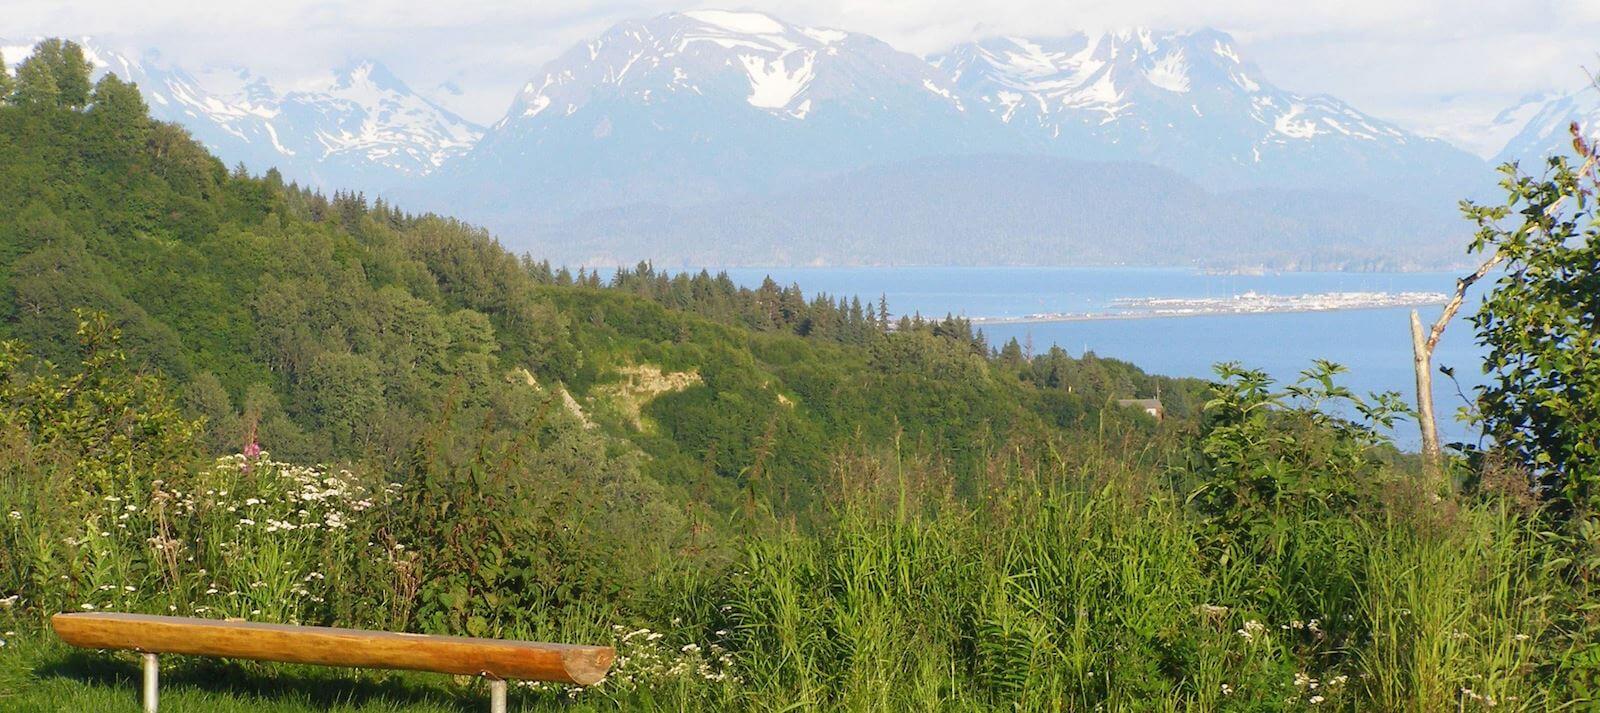 View from Kenai Peninsula Suites in Homer Alaska